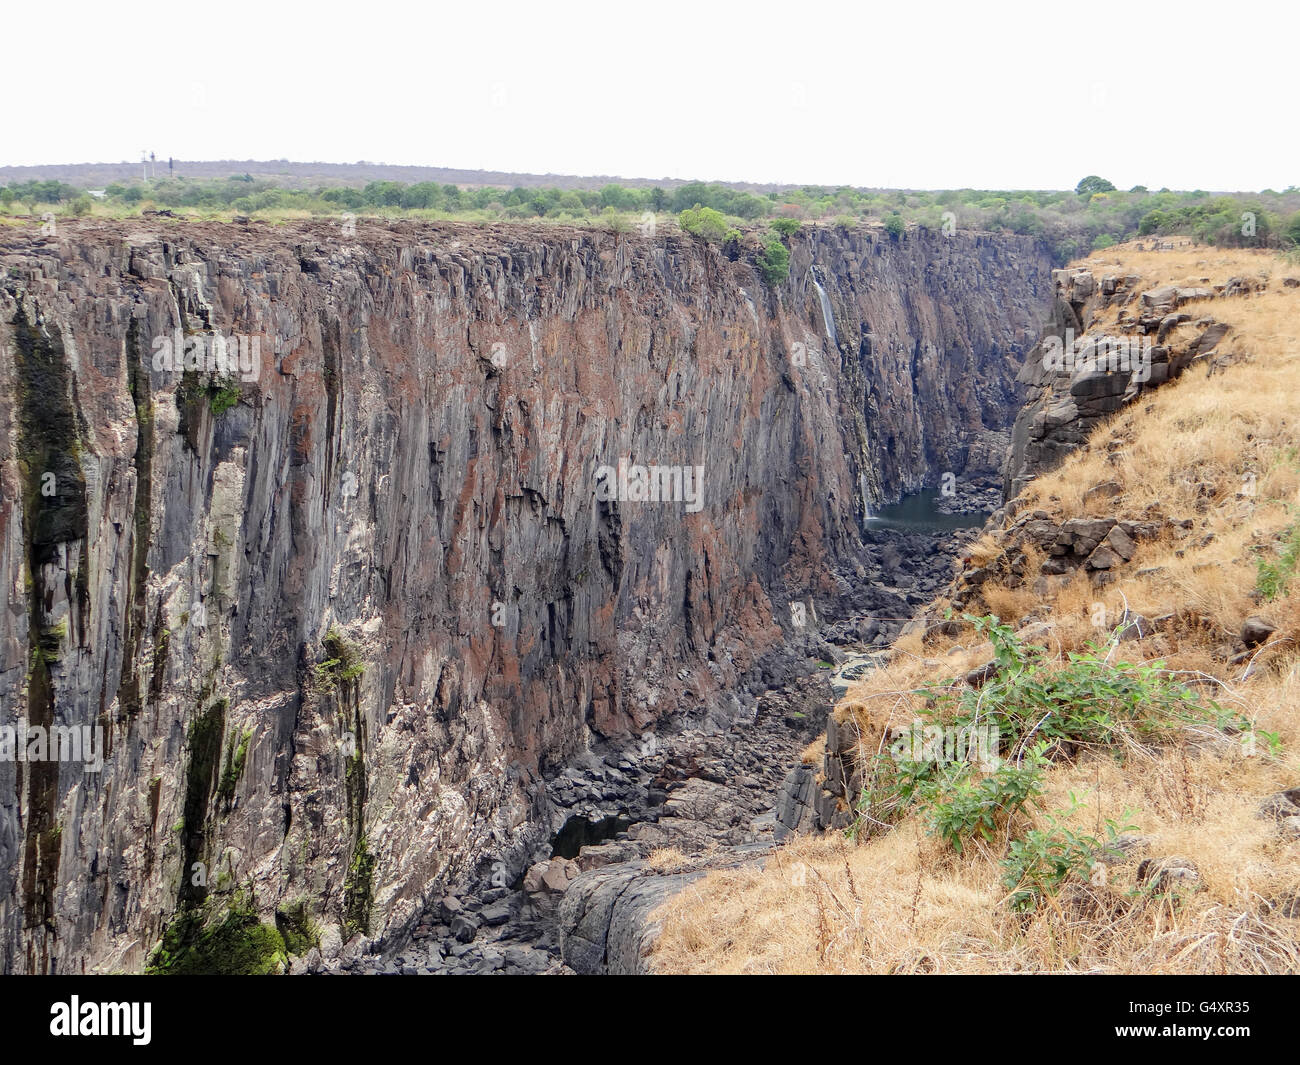 Le Zimbabwe, département, Hwange, Victoria Falls National Park, Victoria Falls, sur Safari Banque D'Images